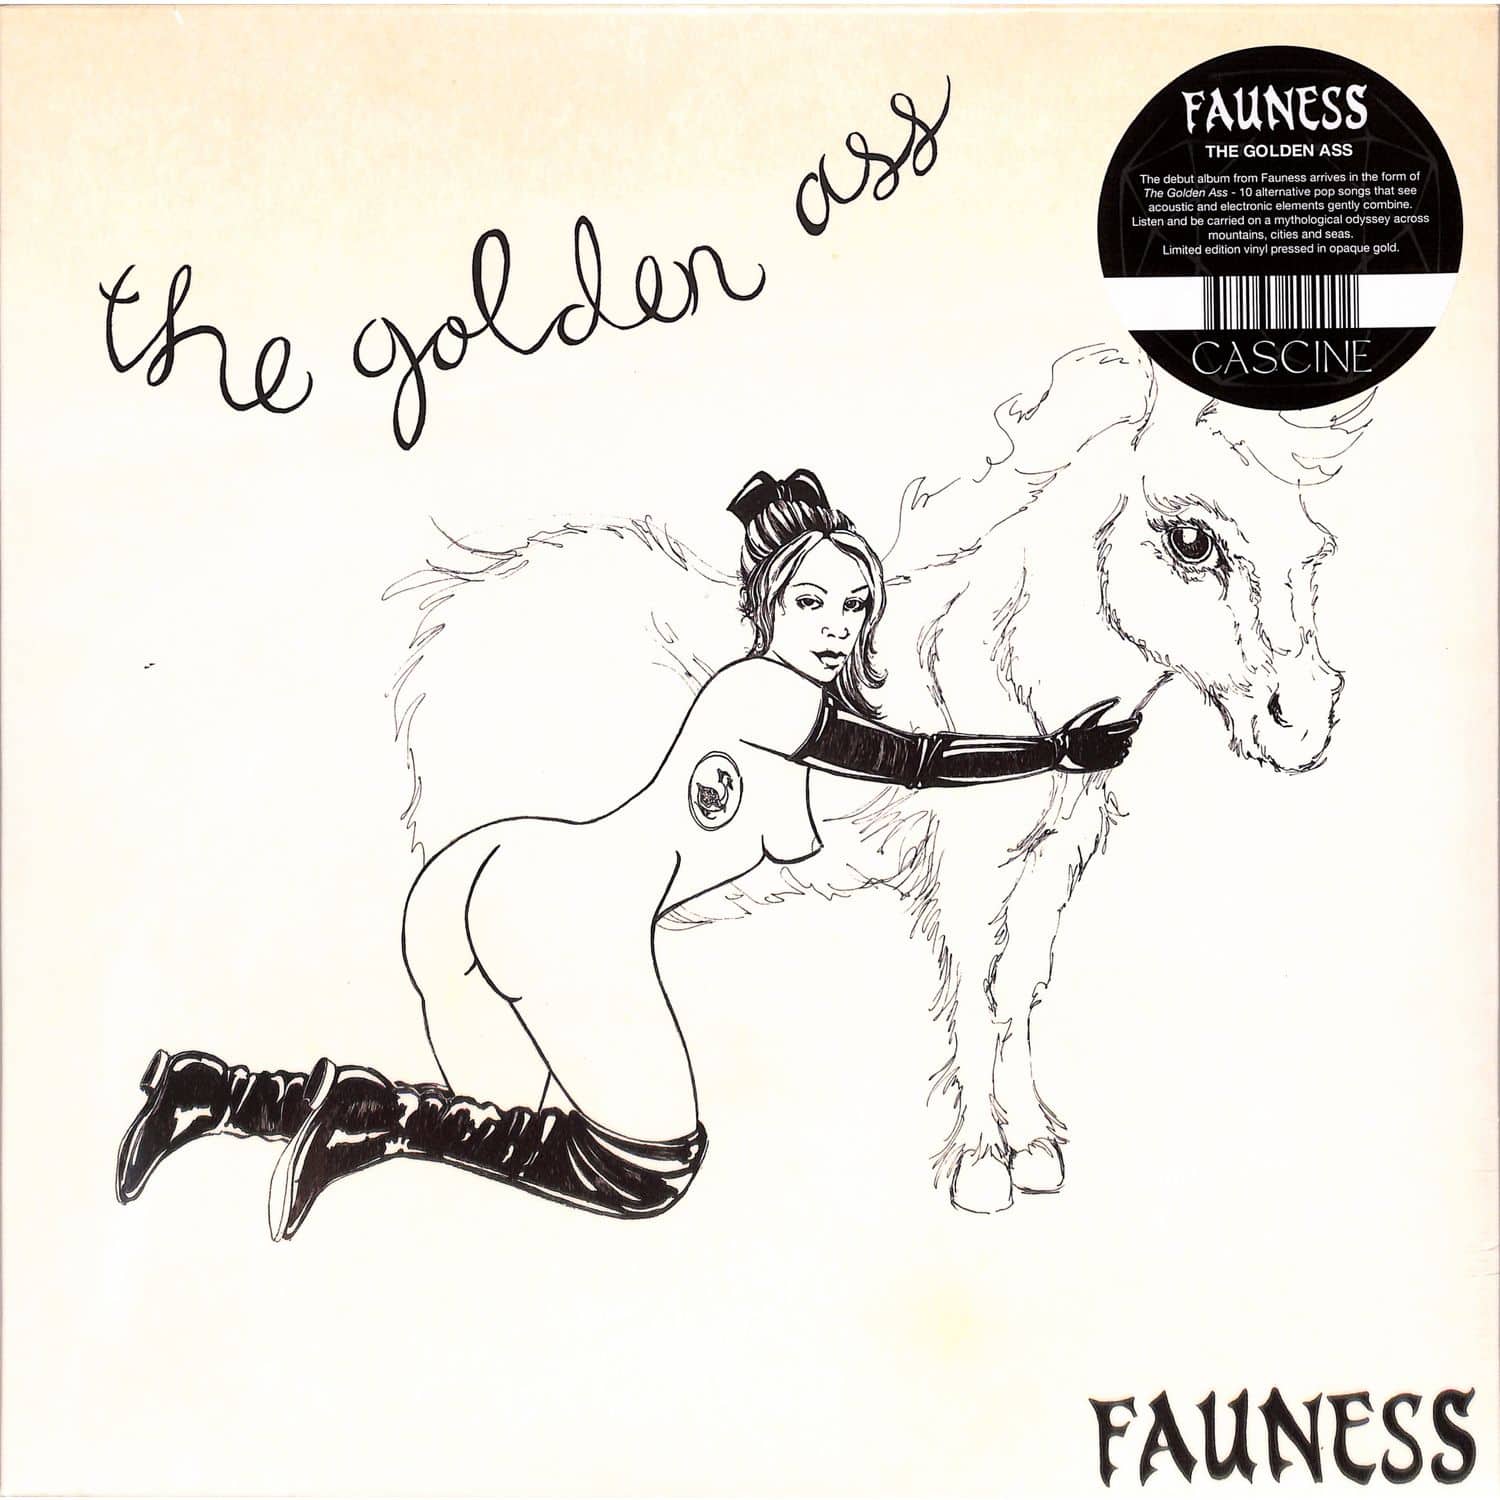 Fauness - THE GOLDEN ASS 